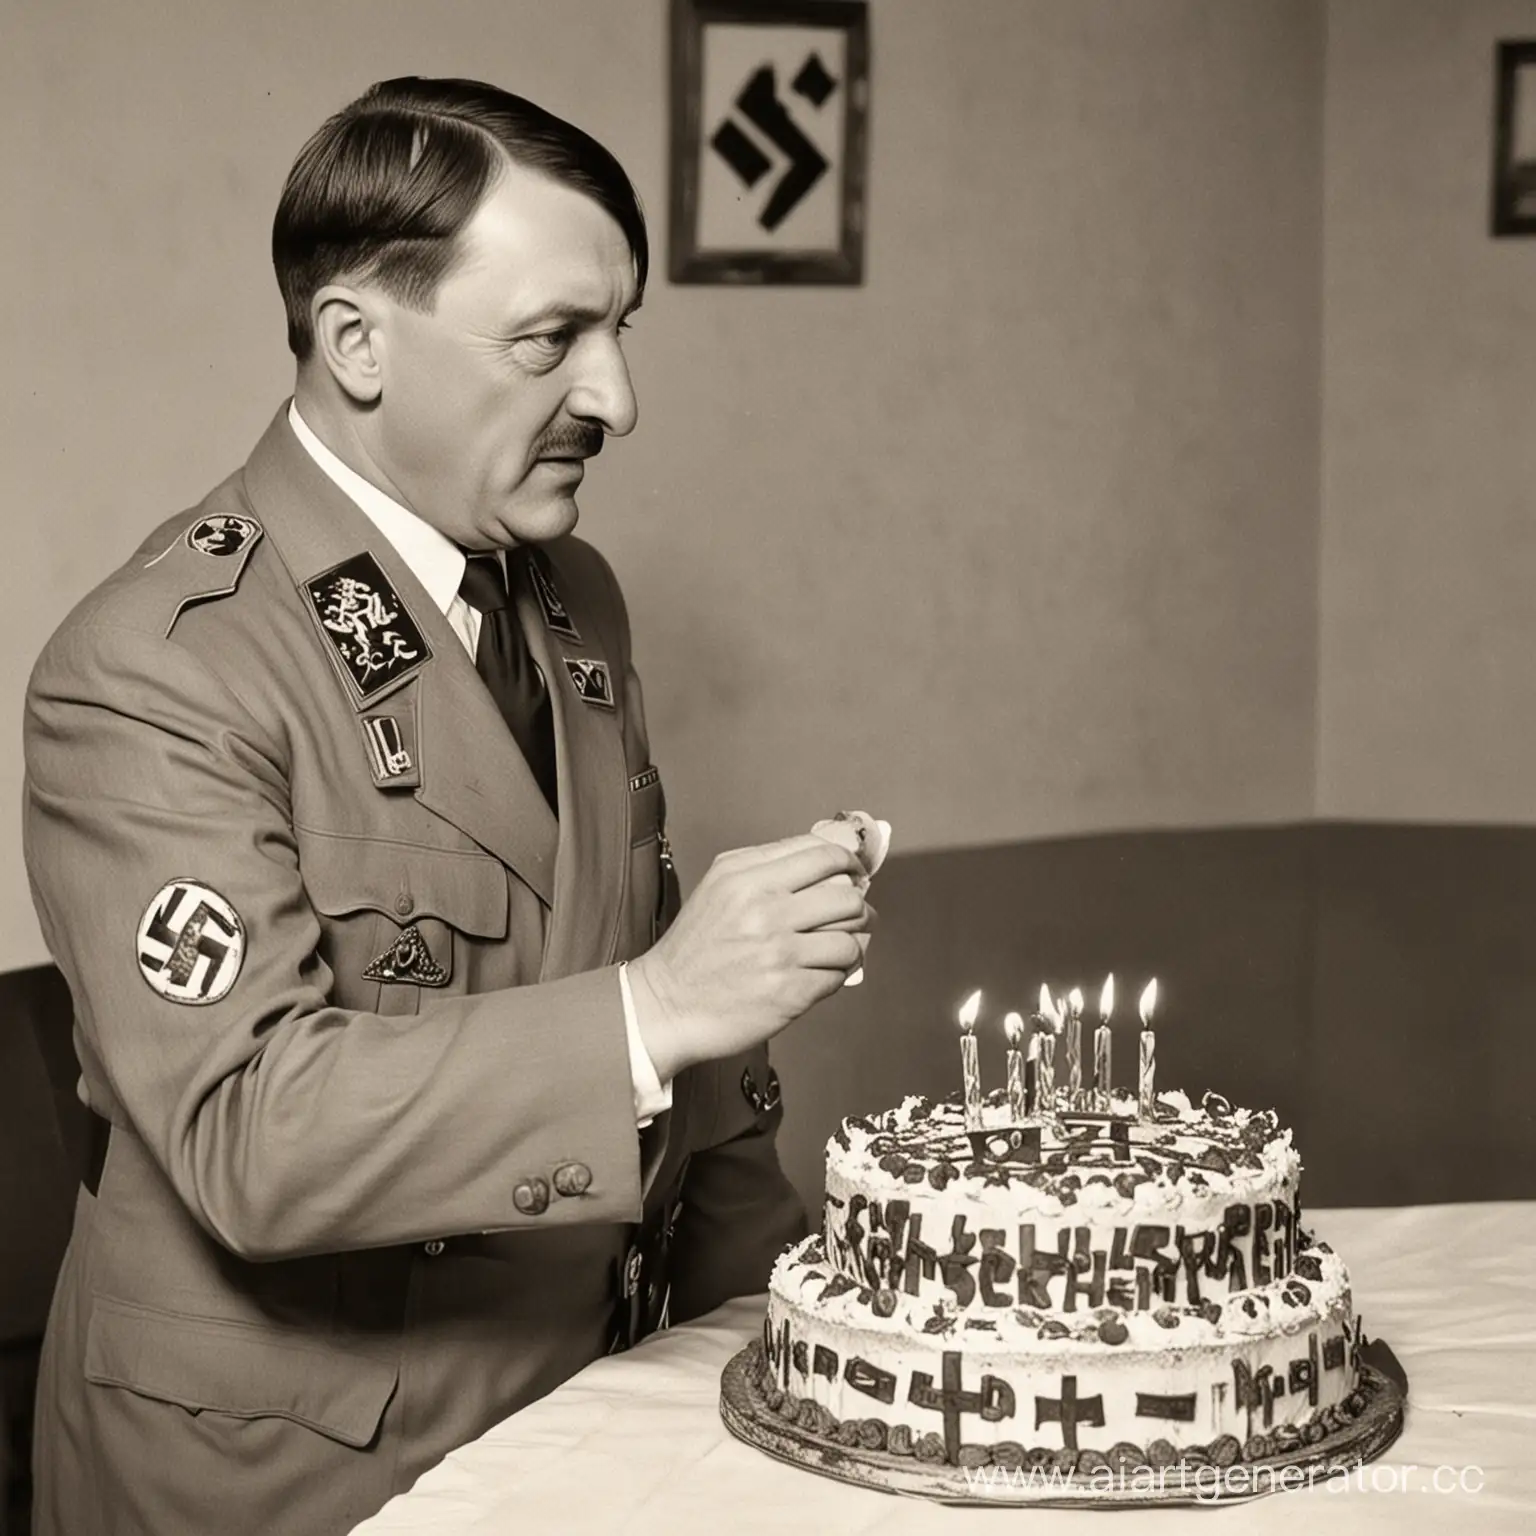 Controversial-Birthday-Celebration-Hitler-Congratulates-with-Nazithemed-Cake